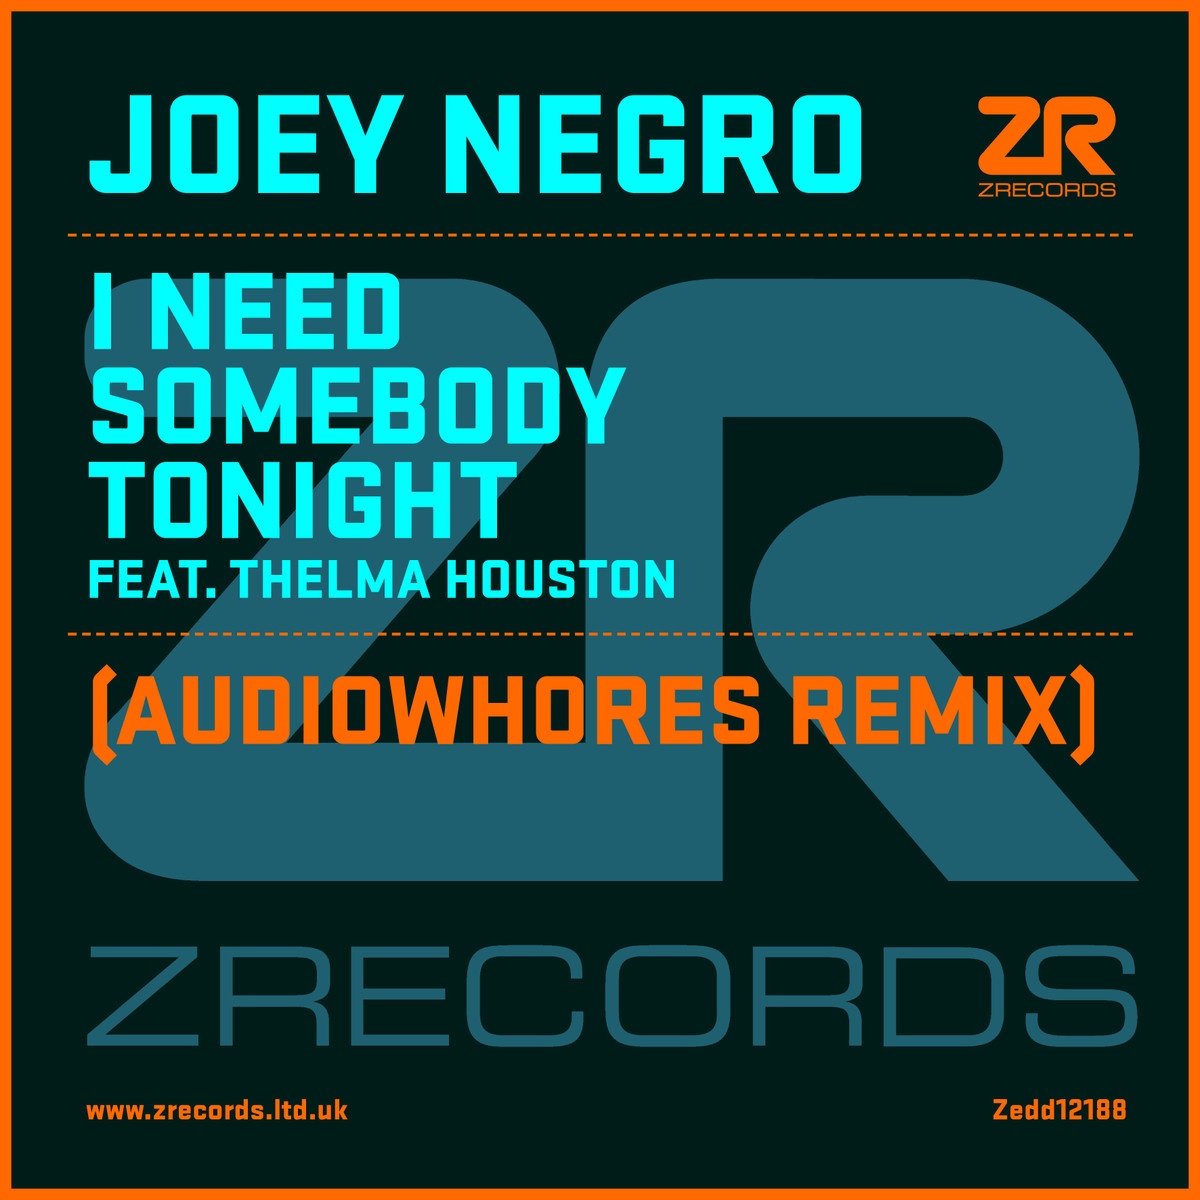 I Need Somebody Tonight Feat. Thelma Houston (Joey Negro Zone Mix)